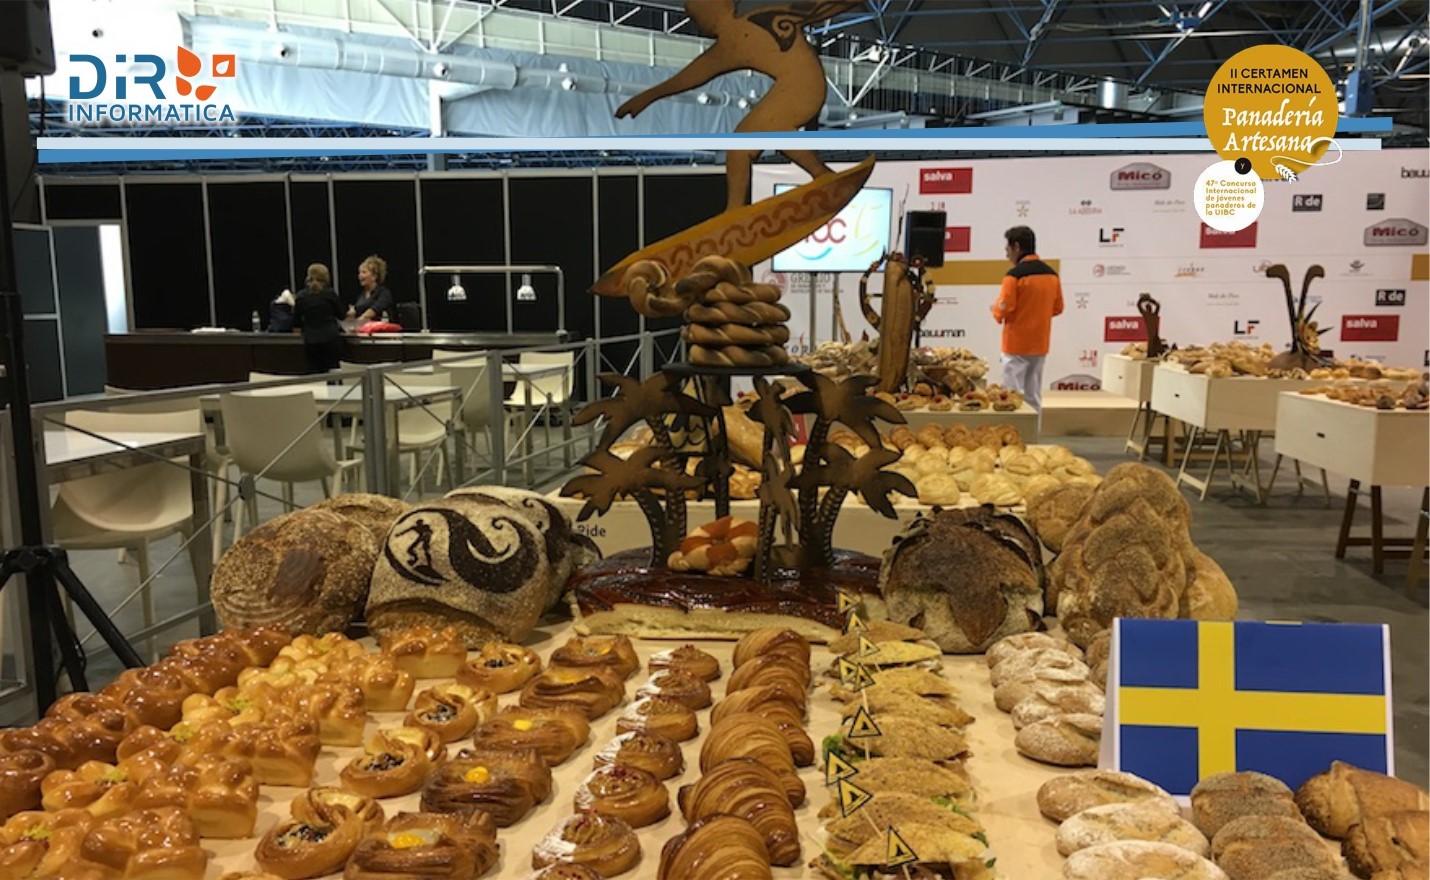 II Certamen Internacional de Panadería - 47º Campeonato Internacional de Jóvenes Panader@s